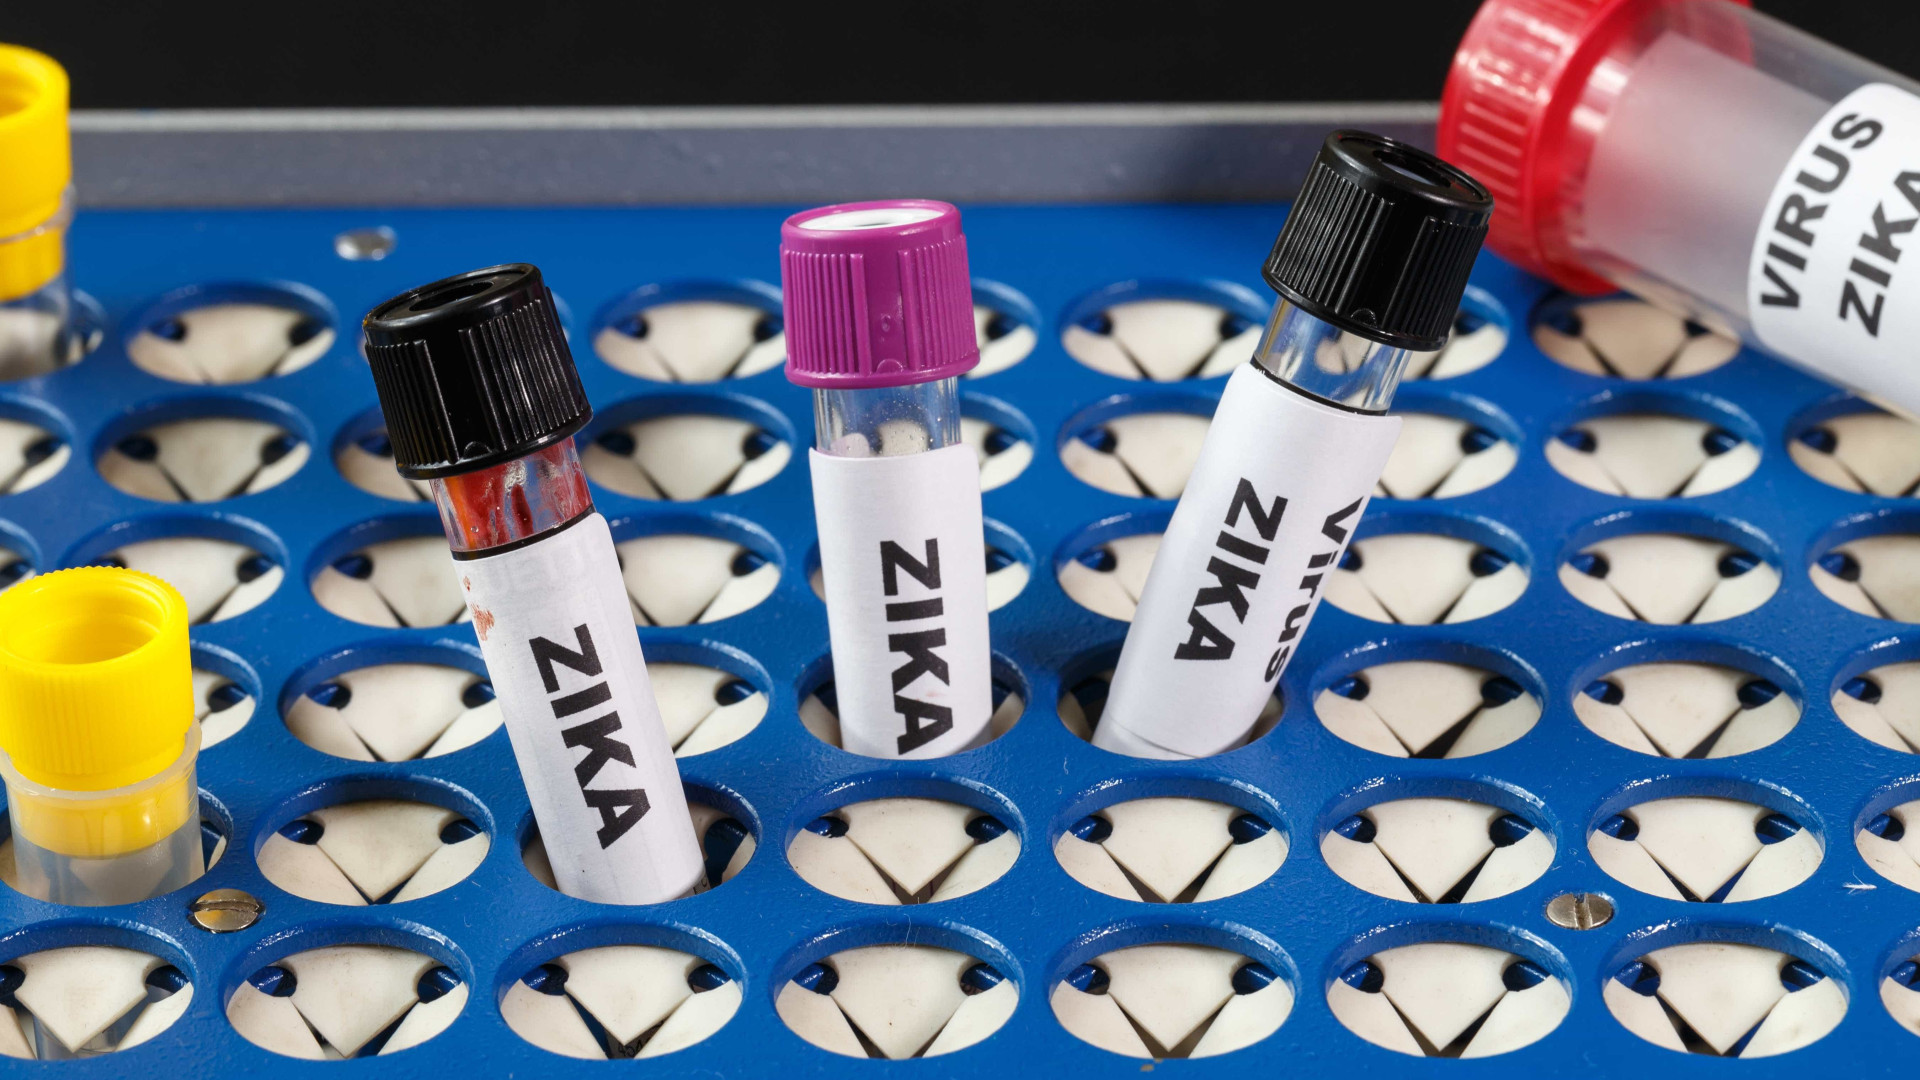 Mulheres querem mais e melhores informações 
sobre a zika, diz pesquisa